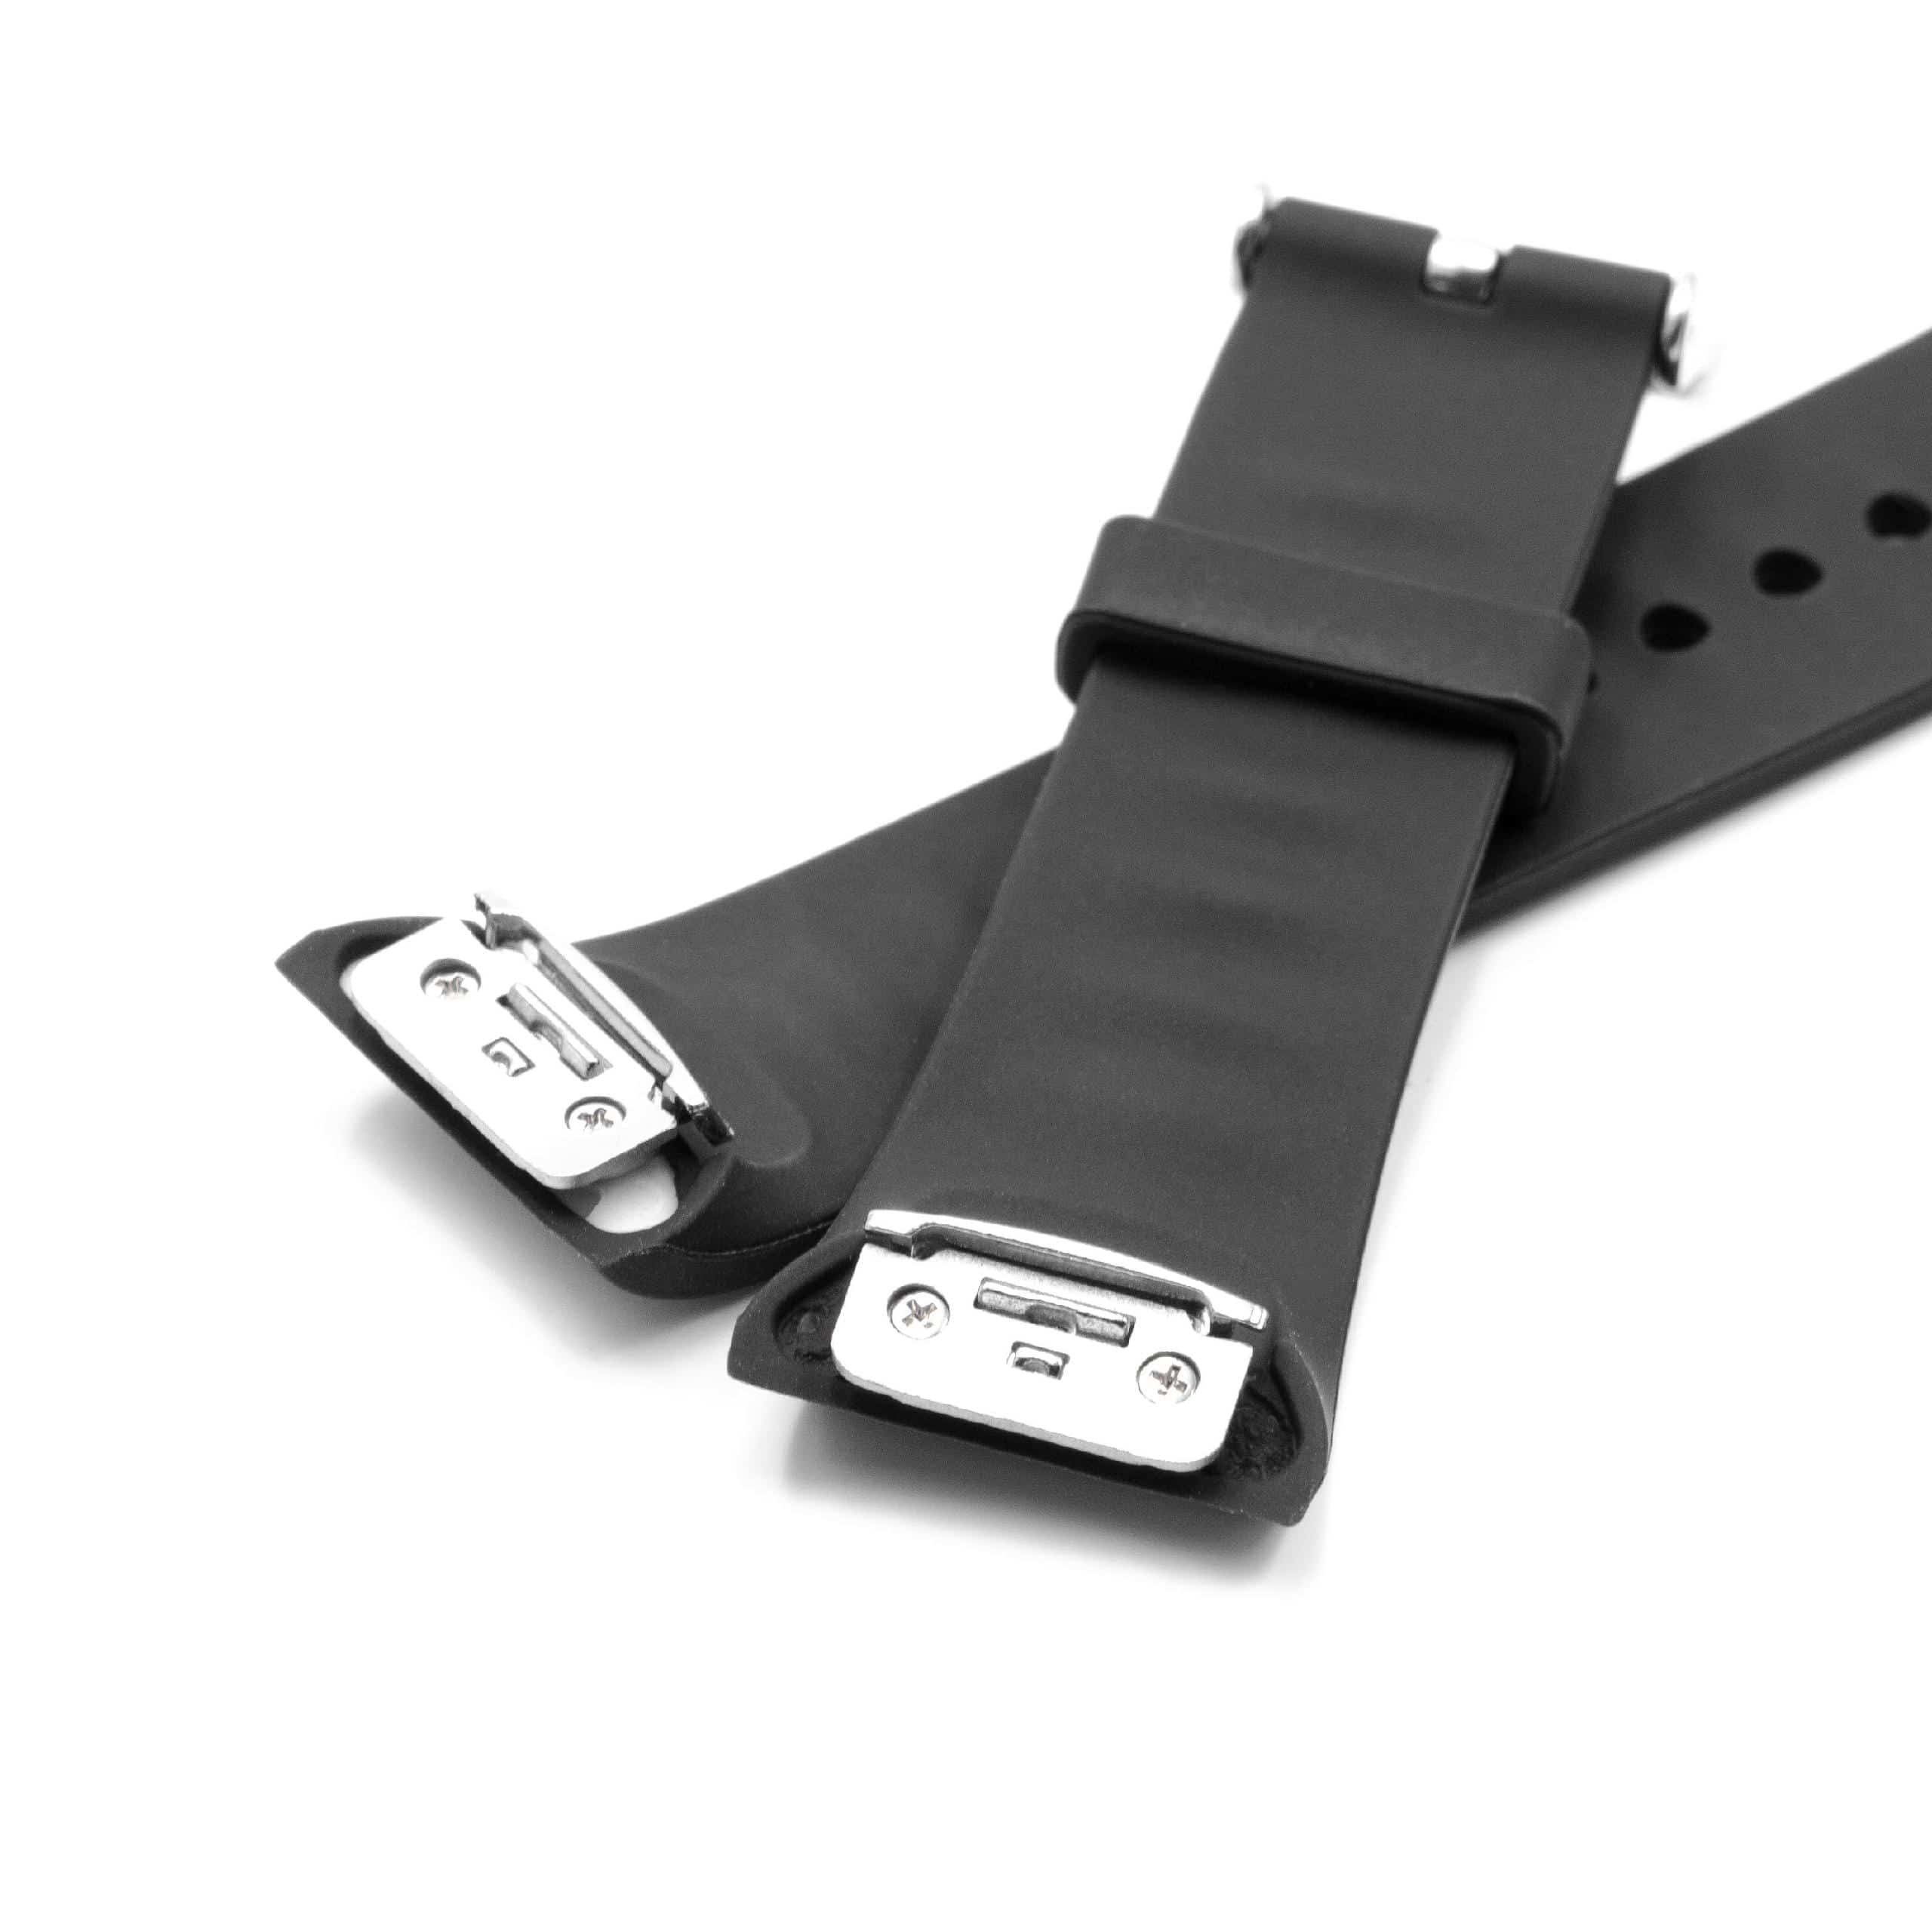 cinturino per Samsung Gear Smartwatch - 11,7 + 7,6 cm lunghezza, 18,5mm ampiezza, silicone, nero